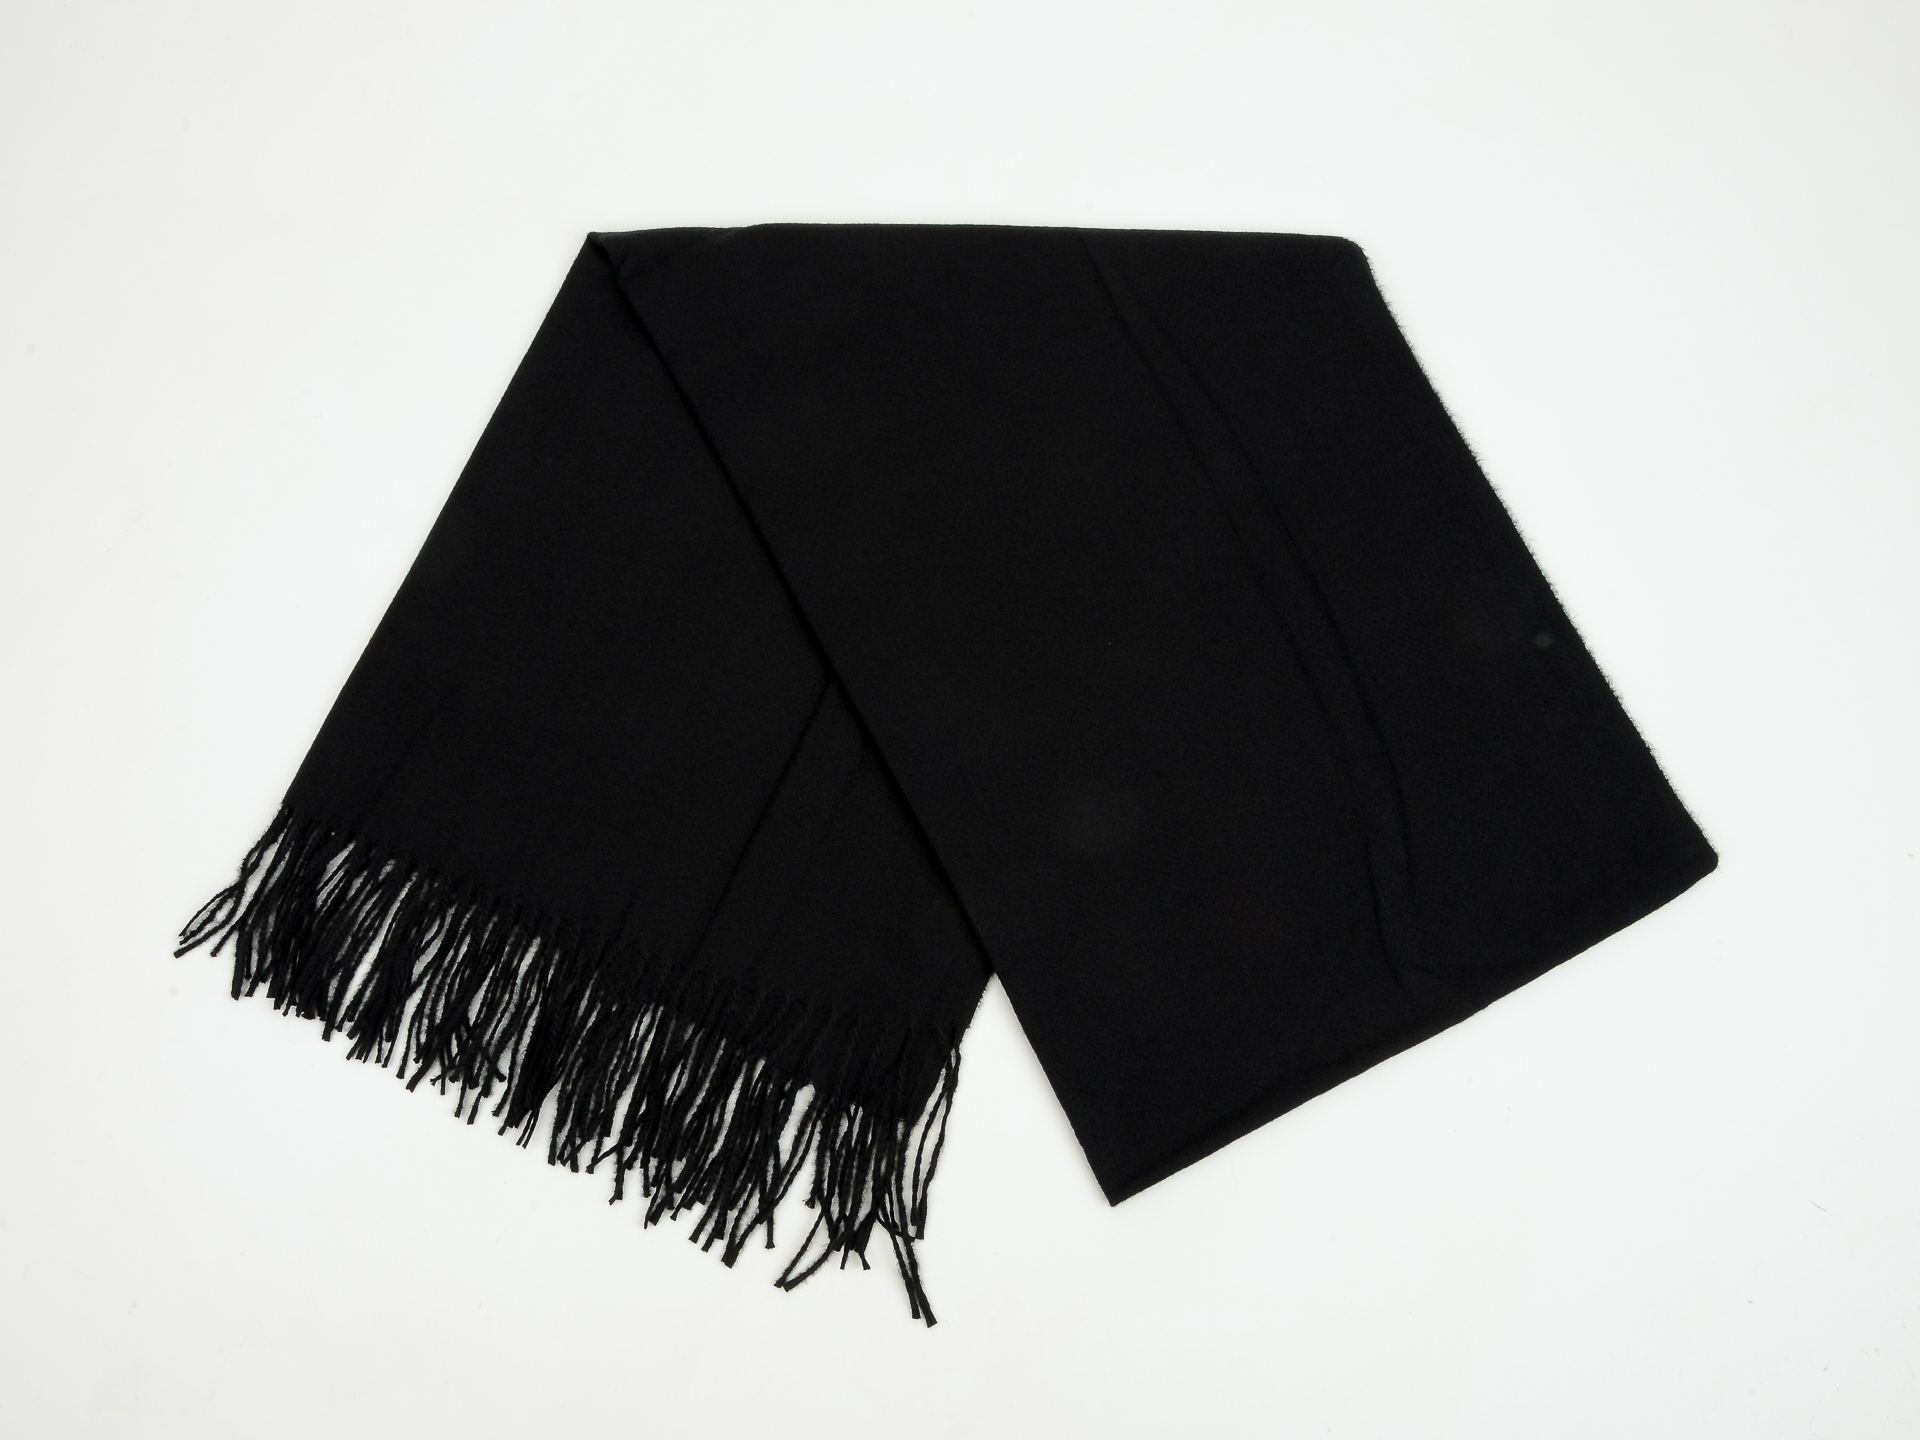 Esarfa KLOP neagra, F676, din material textil